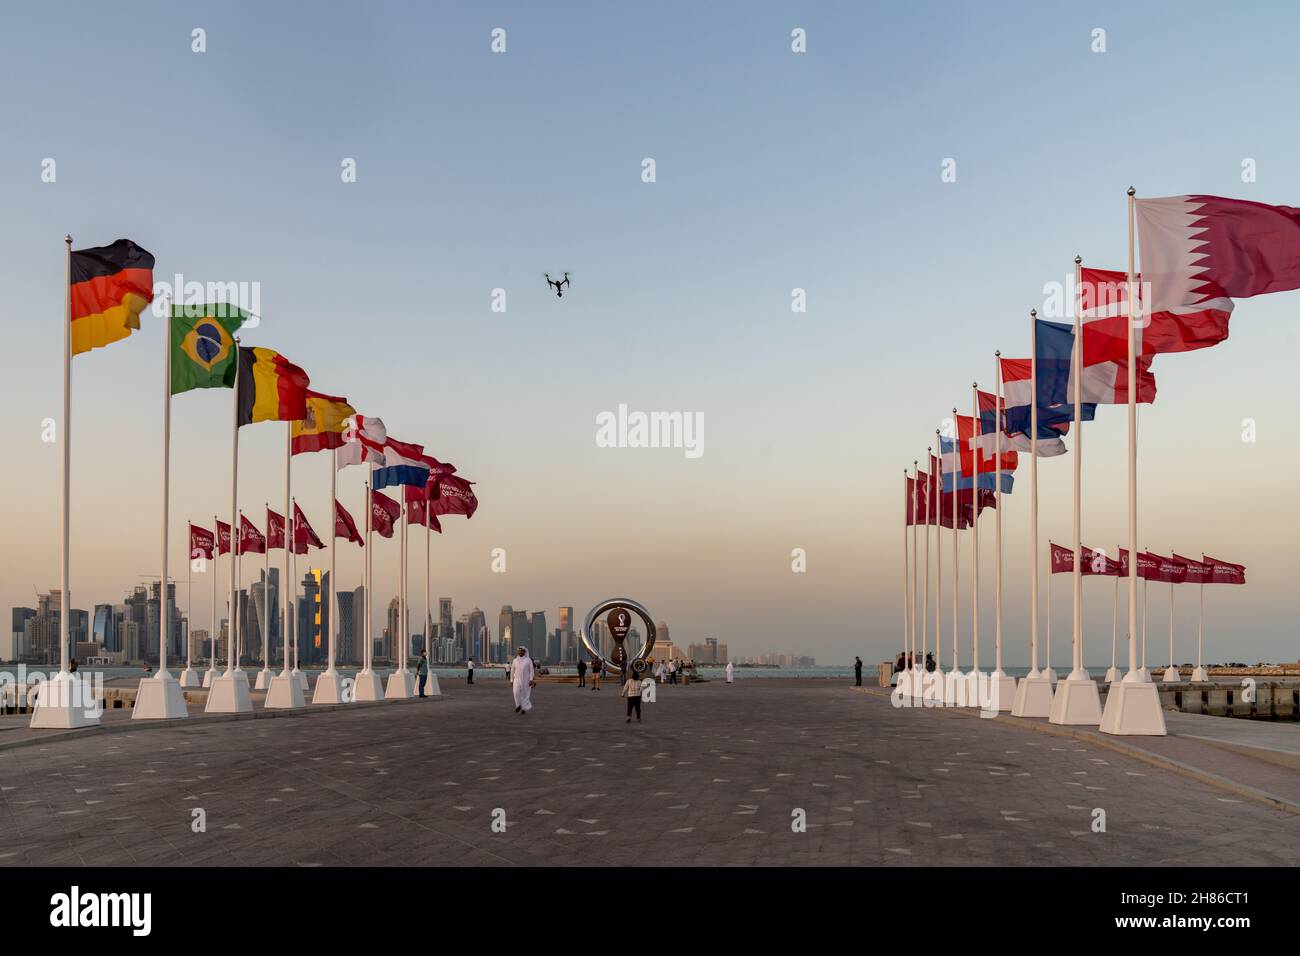 Orologio del conto alla rovescia per la Coppa del mondo FIFA 2022 sulla Corniche di Doha, 25 novembre 2022, Doha, Qatar. Foto Stock